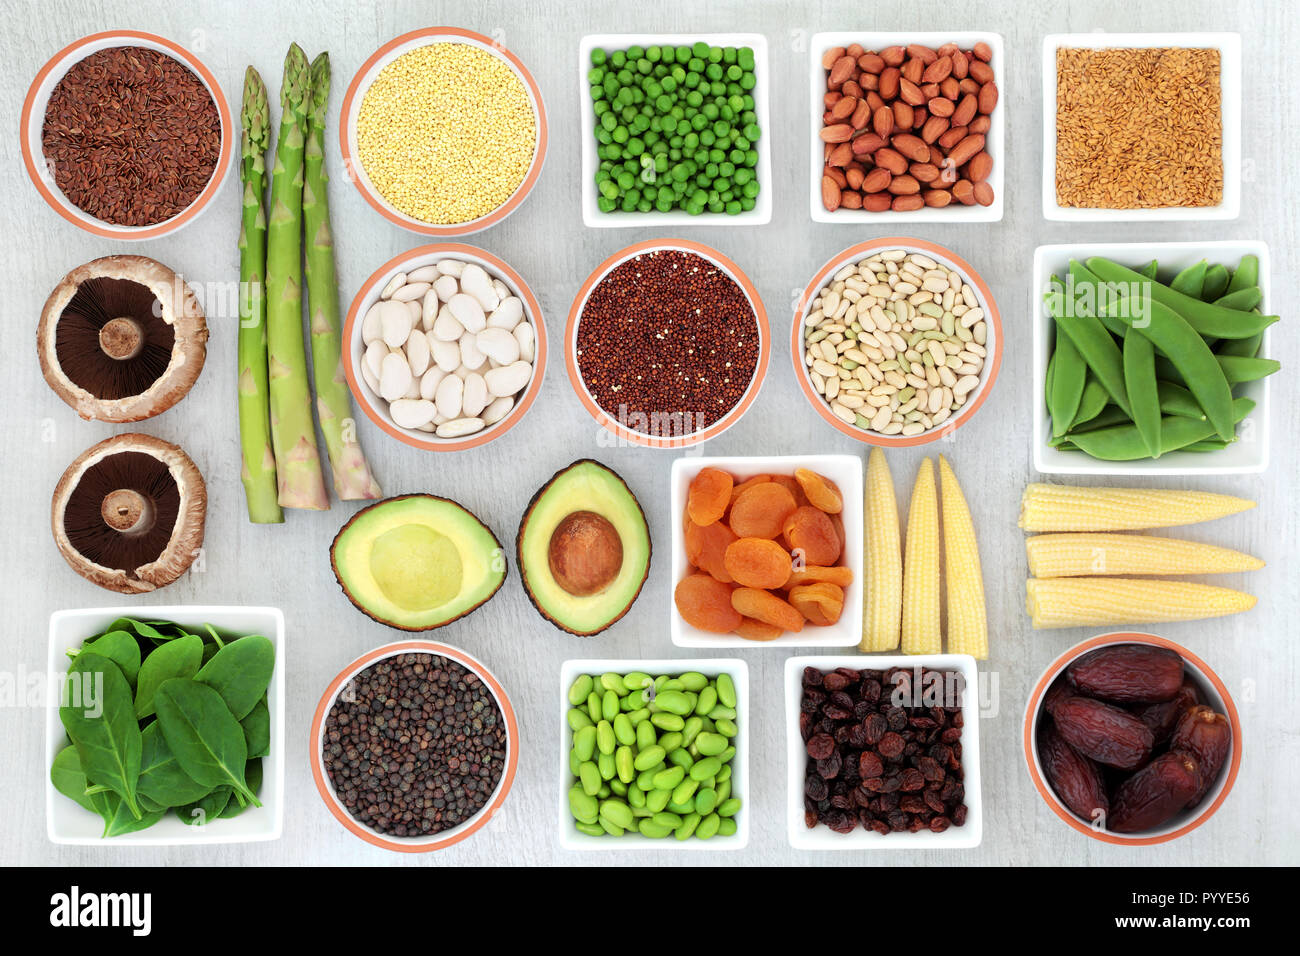 Protein Pflanzenschutz Auswahl an Speisen für eine gesunde Ernährung mit Getreide, Hülsenfrüchte, getrocknete Früchte, Samen, Nüsse und Gemüse auf rustikalem Holz Hintergrund. Lebensmittel h Stockfoto